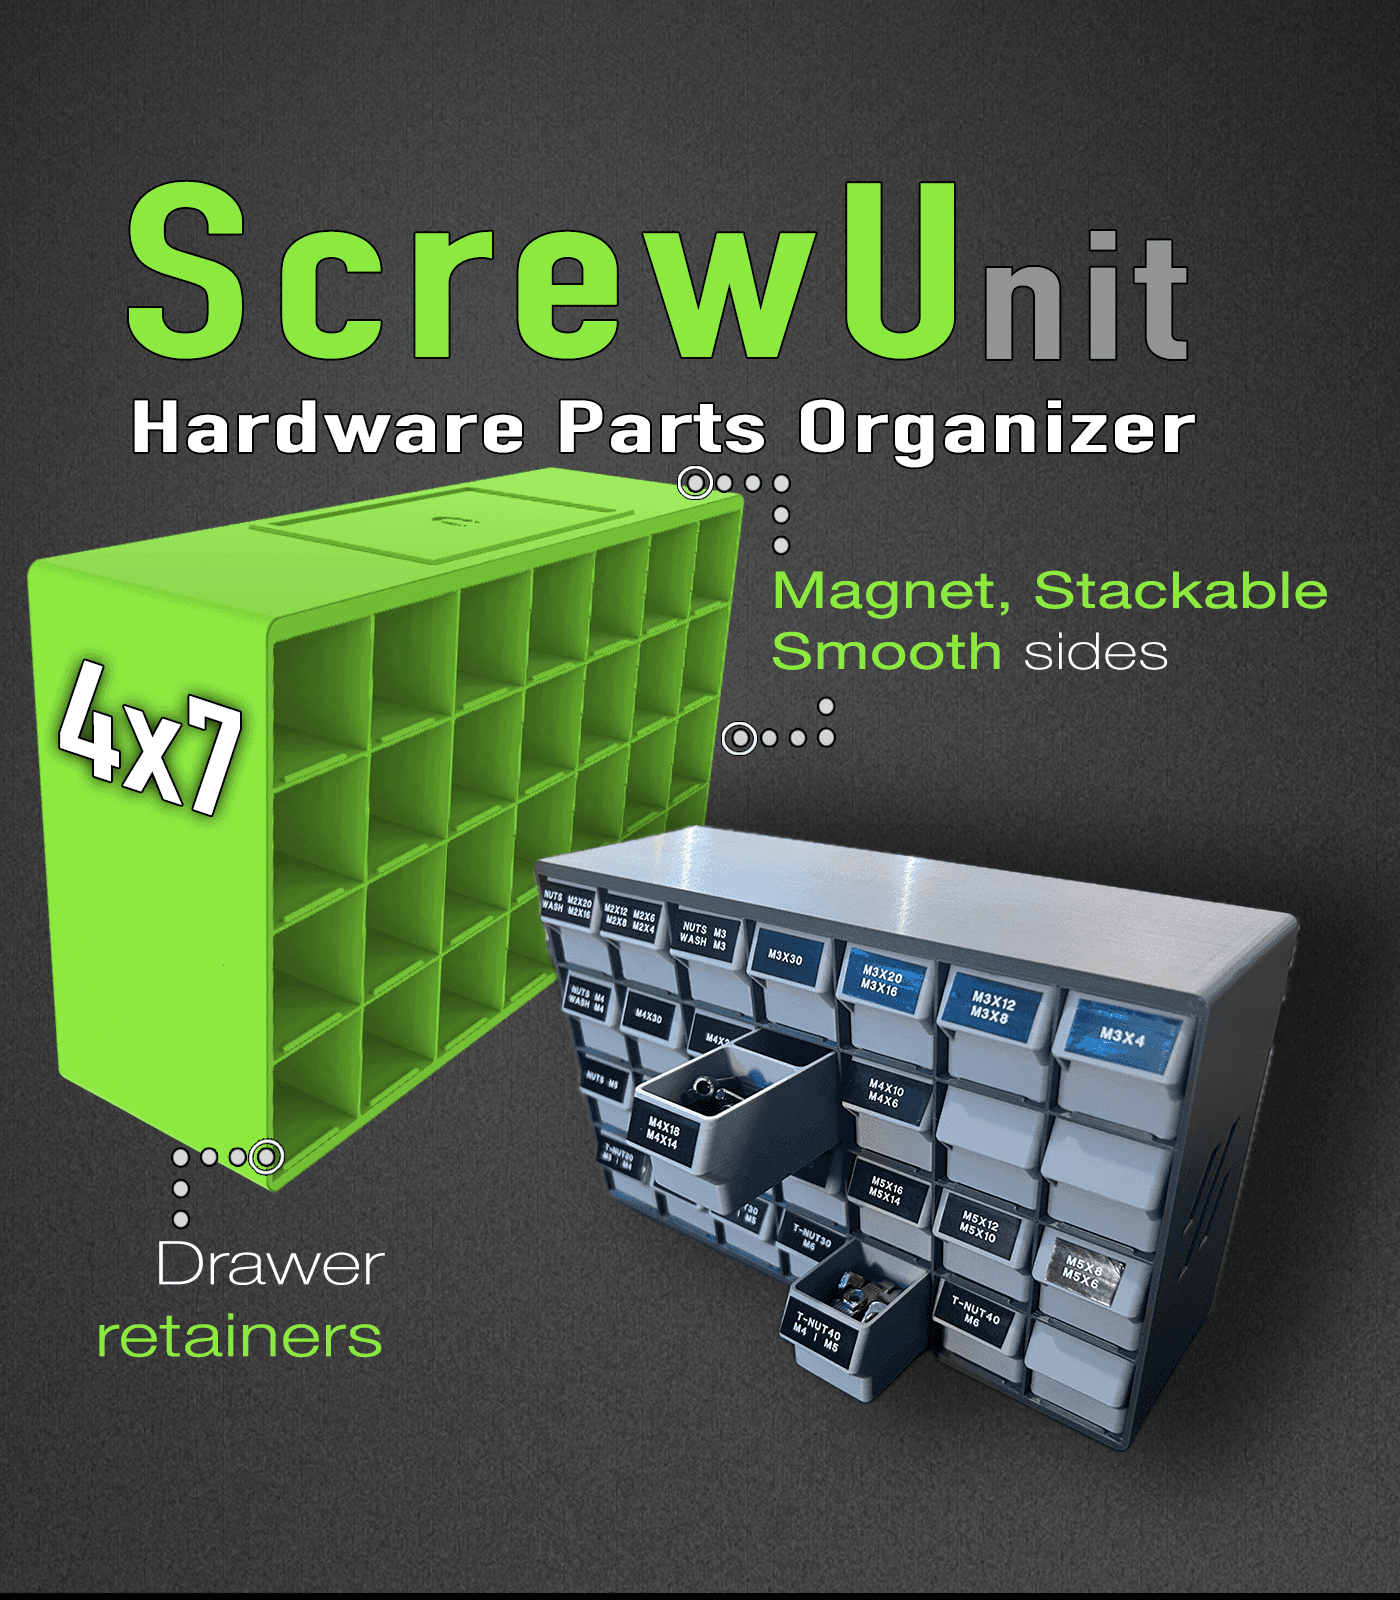 ScrewU-nit Hardware Organizer - nuts, bolts, screws 3d model